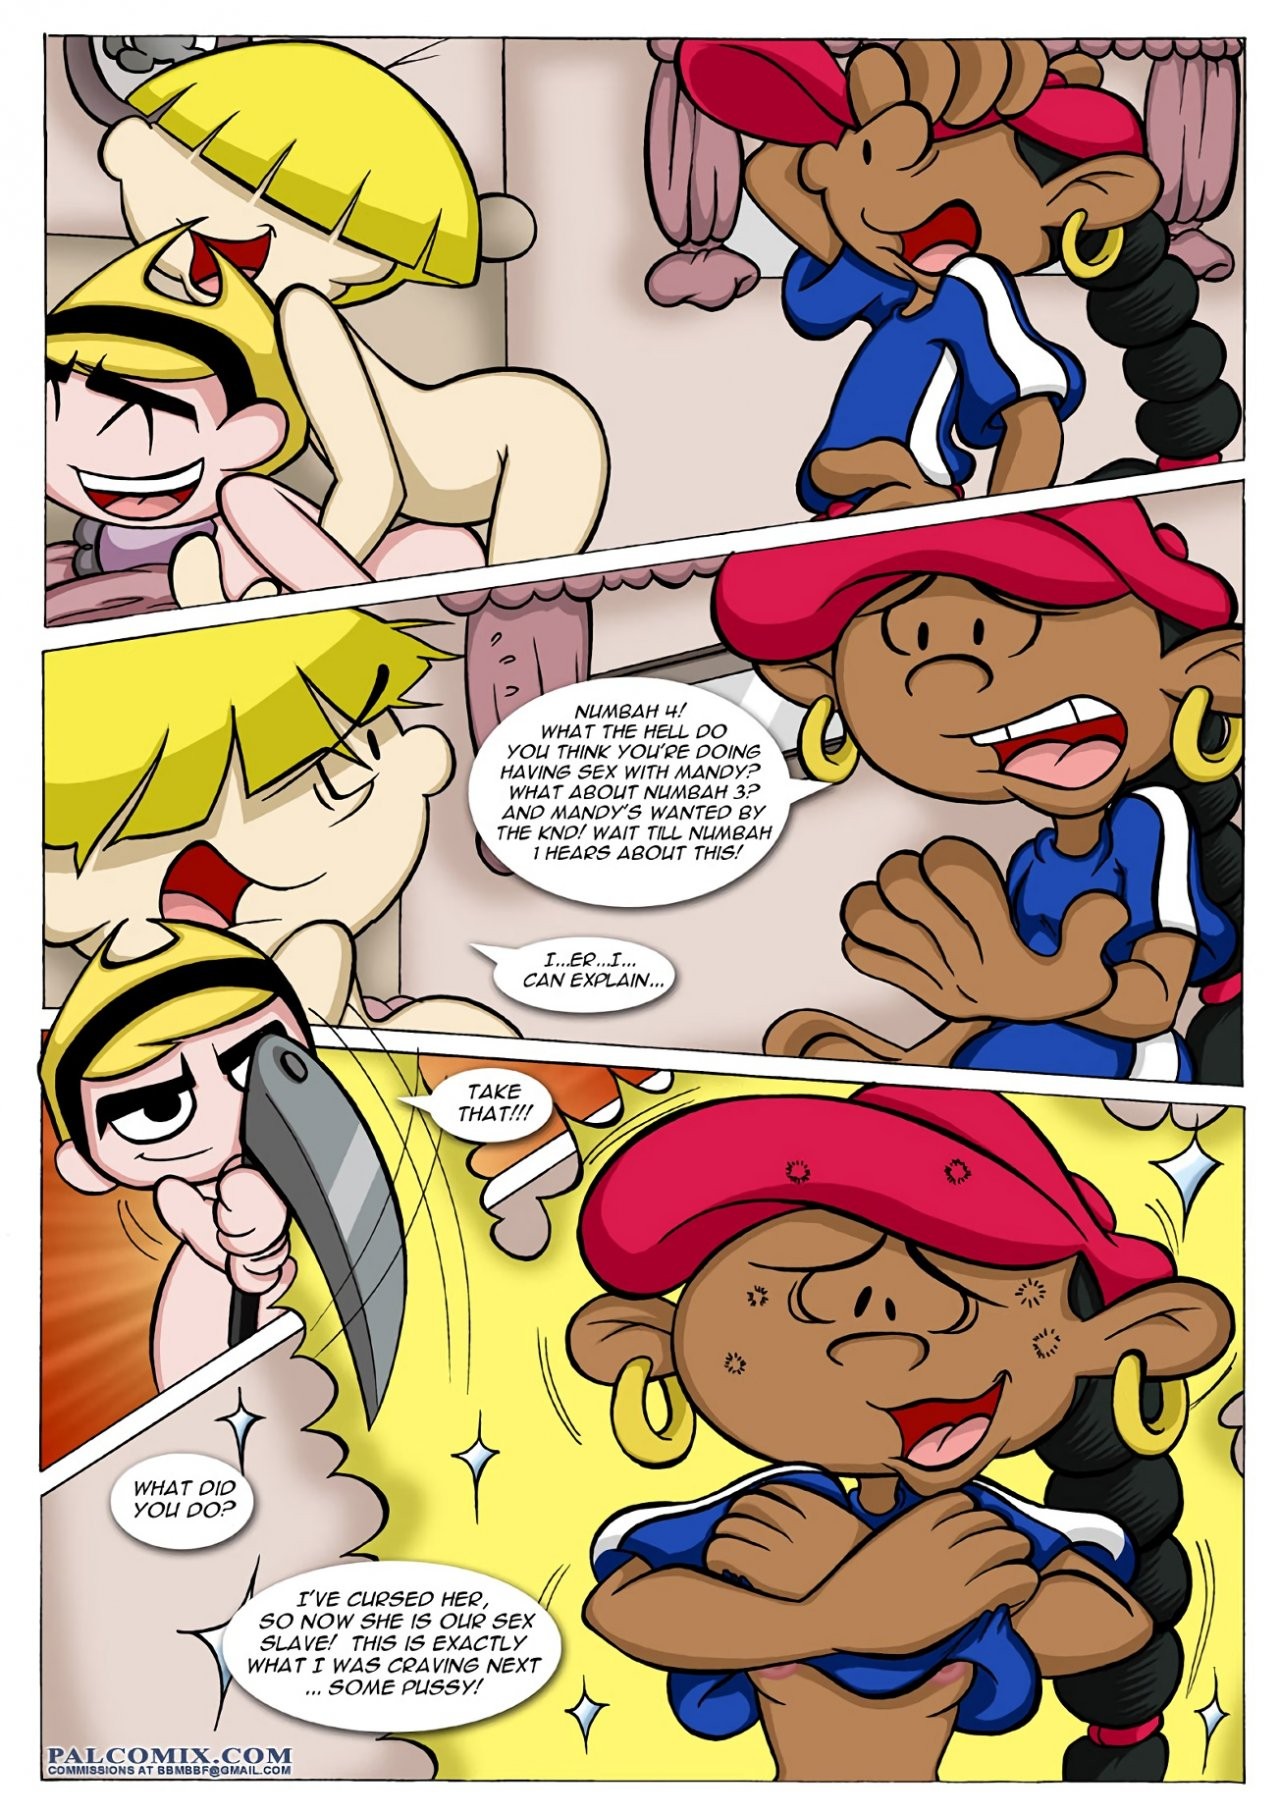 The Sex Adventures of the Kids Next Door 01 porn comic picture 9